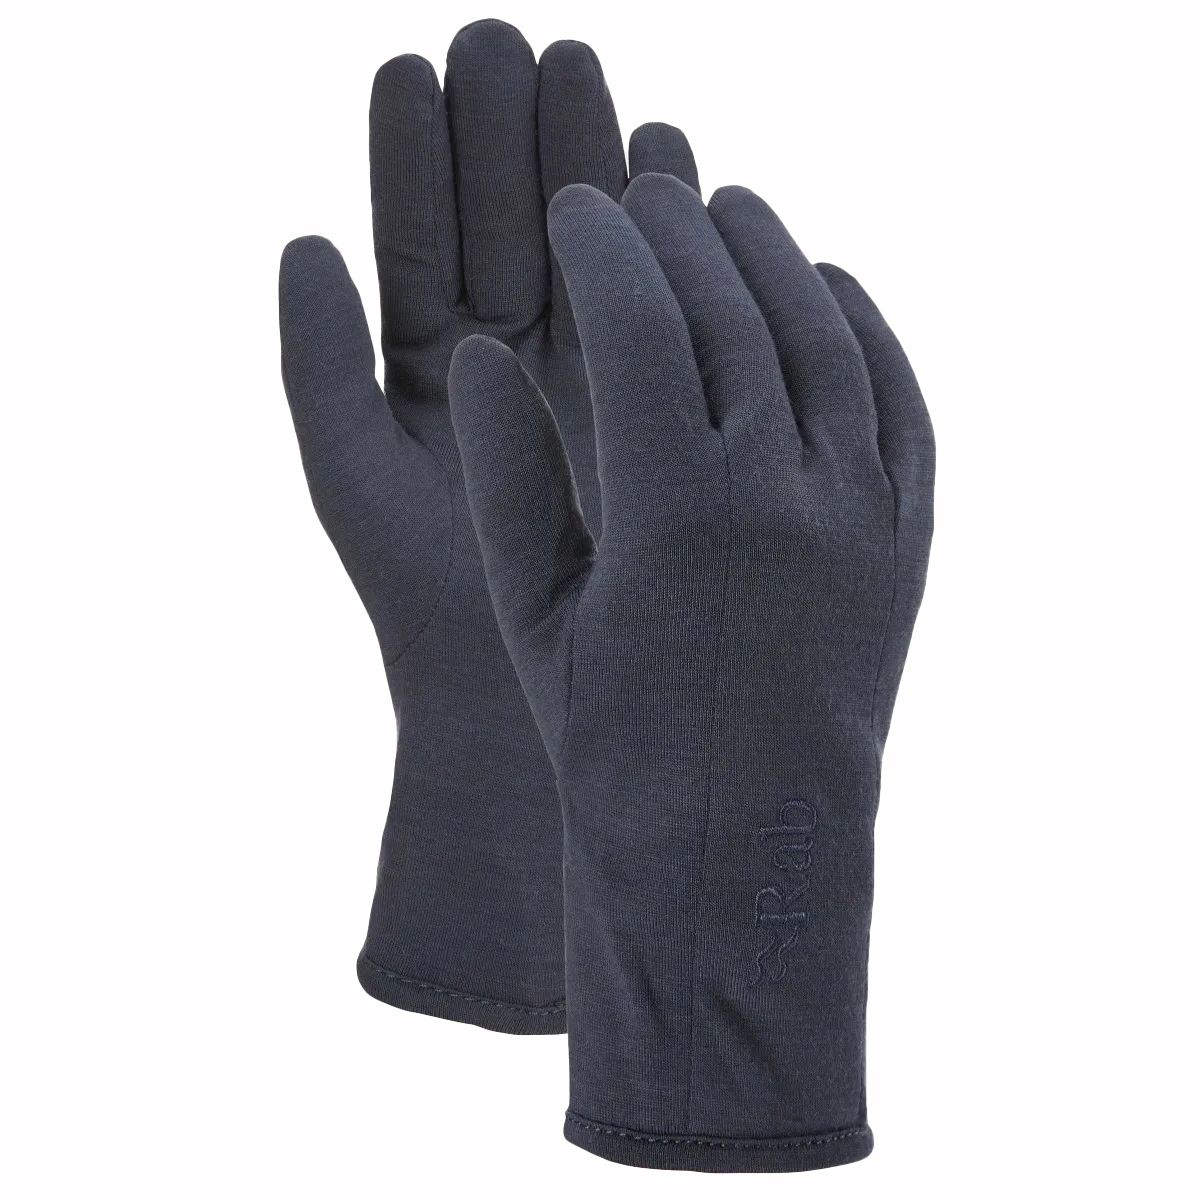 Produktbild von Rab Forge 160 Damen Handschuhe - ebony